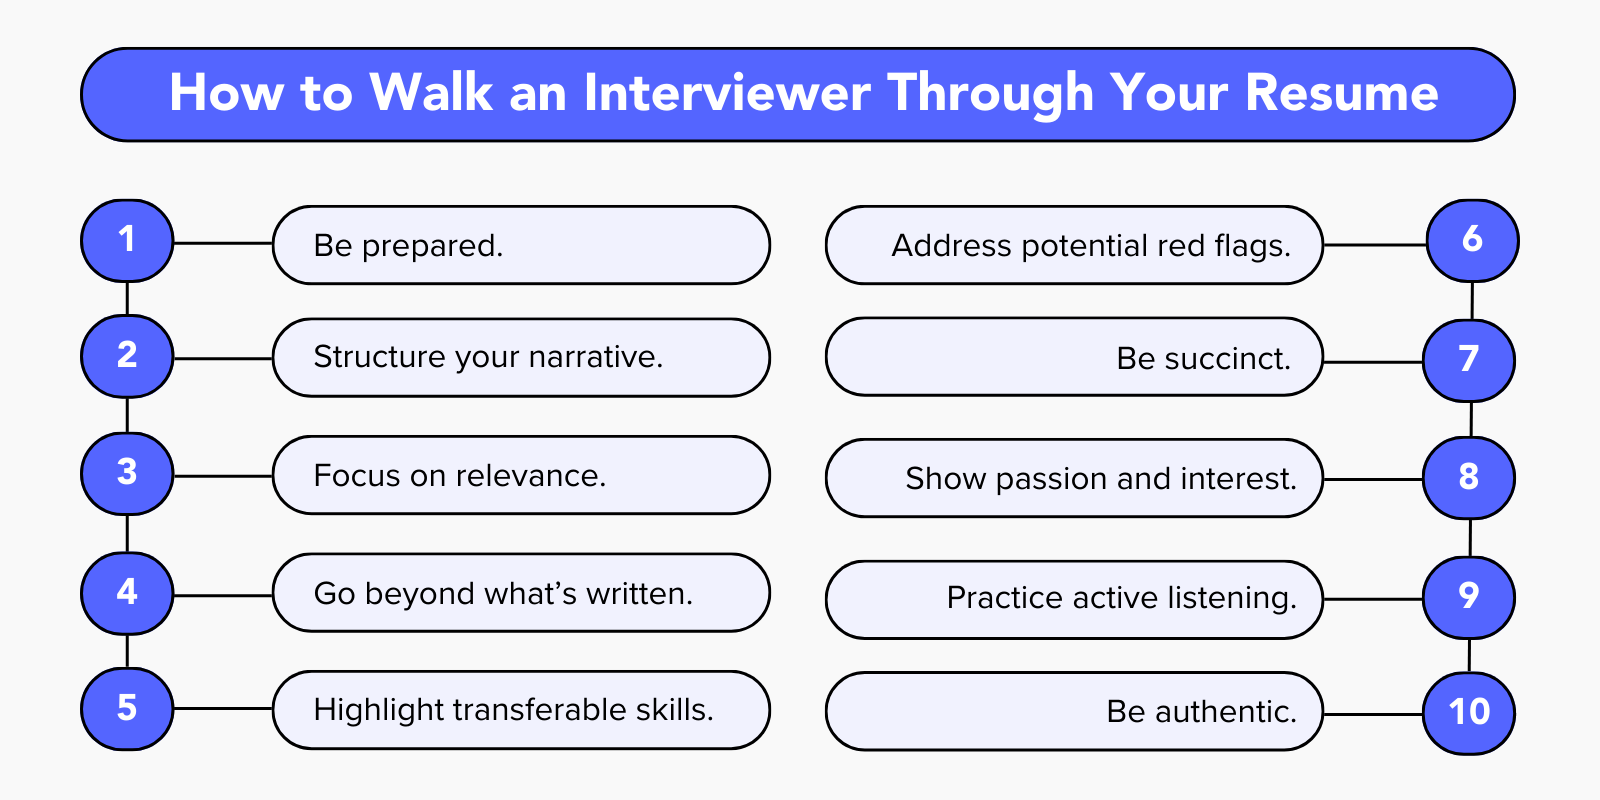 How to Walk an Interviewer Through a Resume